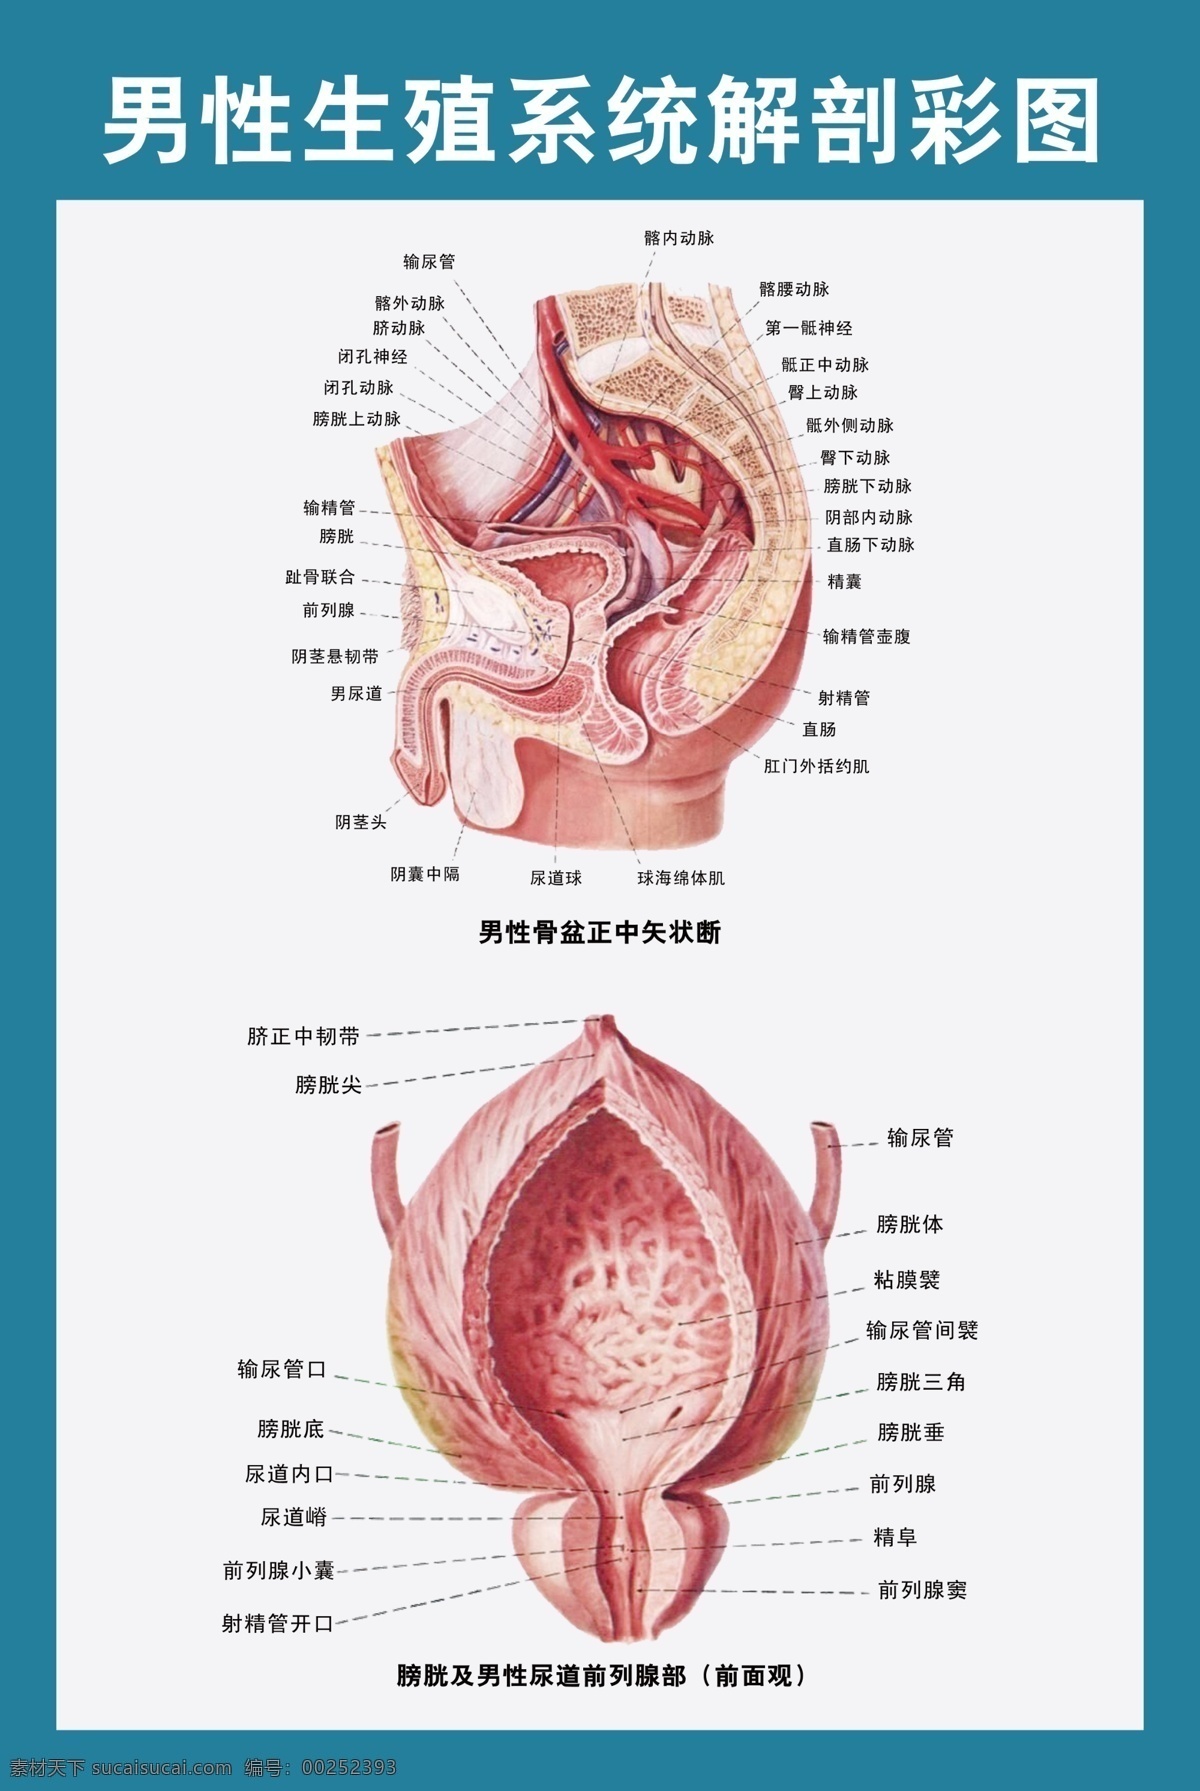 男性 生殖 解剖 图 男性生殖器 前列腺 解剖图 医学图谱 科室展板 男科 展板模板 广告设计模板 源文件